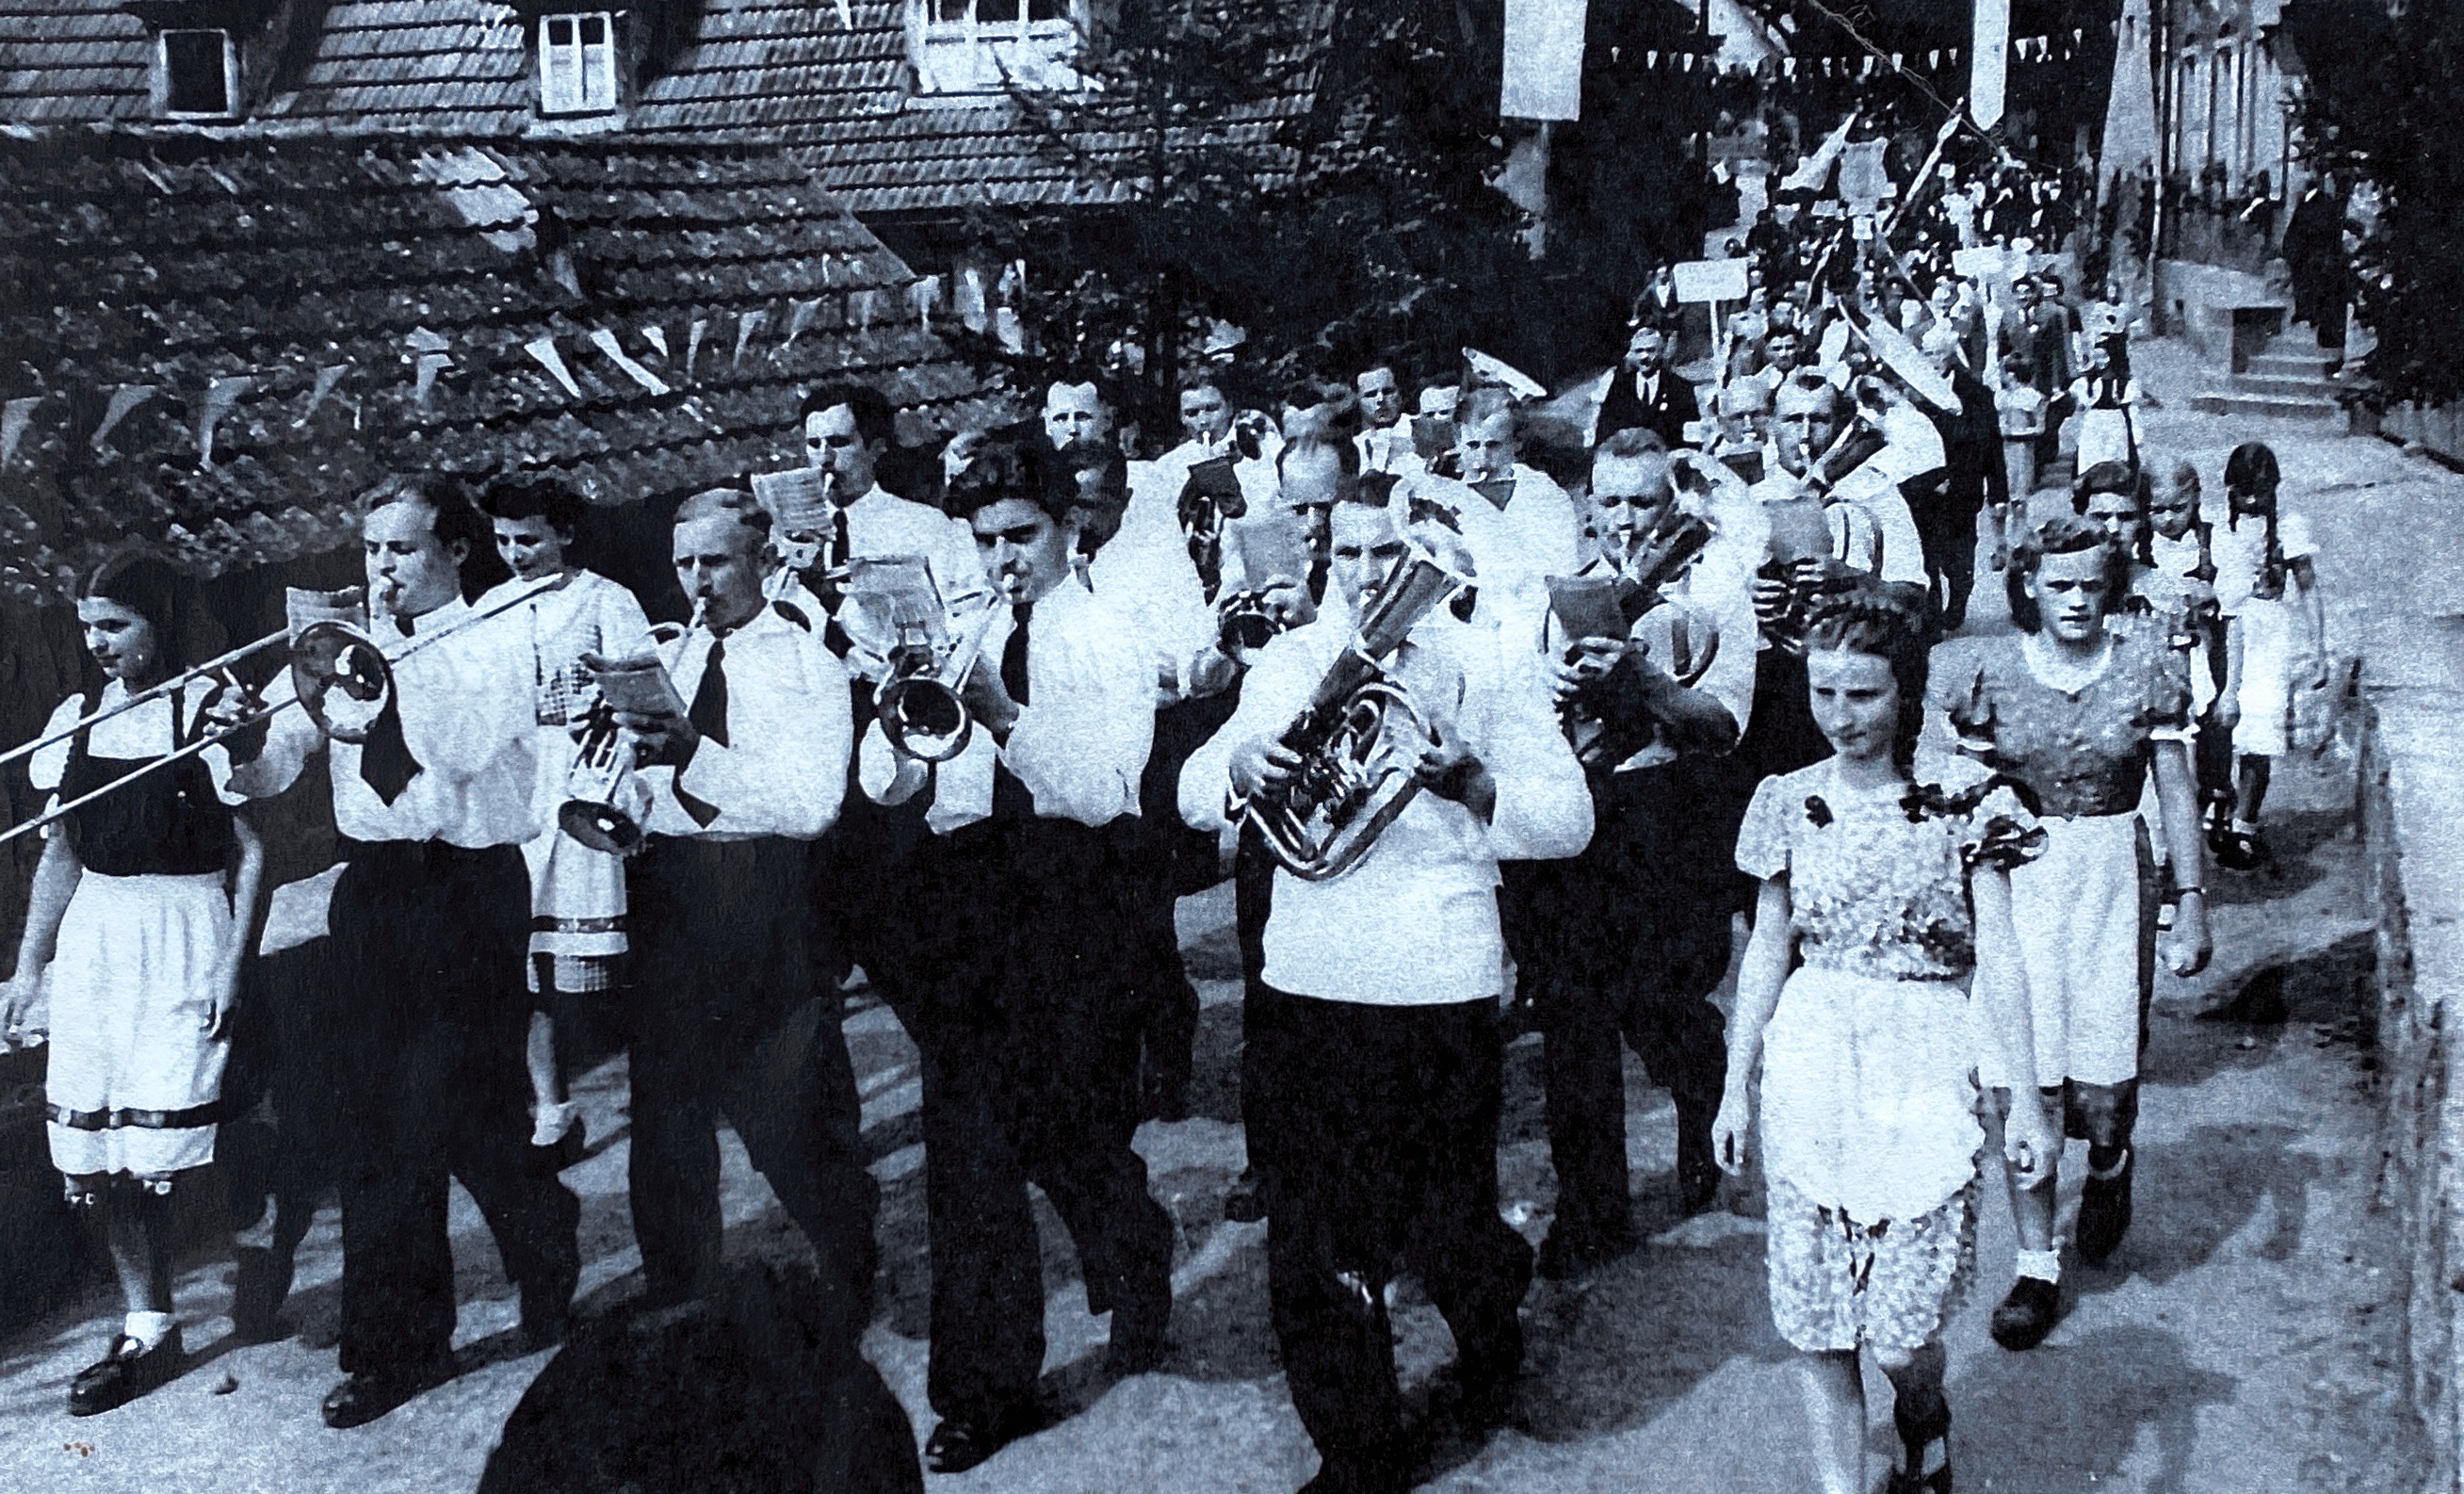 Jubiläum 60Jahre Gesangverein 1890 vom 01. und 02.Juli 1950
„Blaskapelle Aschach“beim Festzug
v.links Walter Limpert, Johann Schlereth, Max Heger, Kapellmeister Josef Bauer